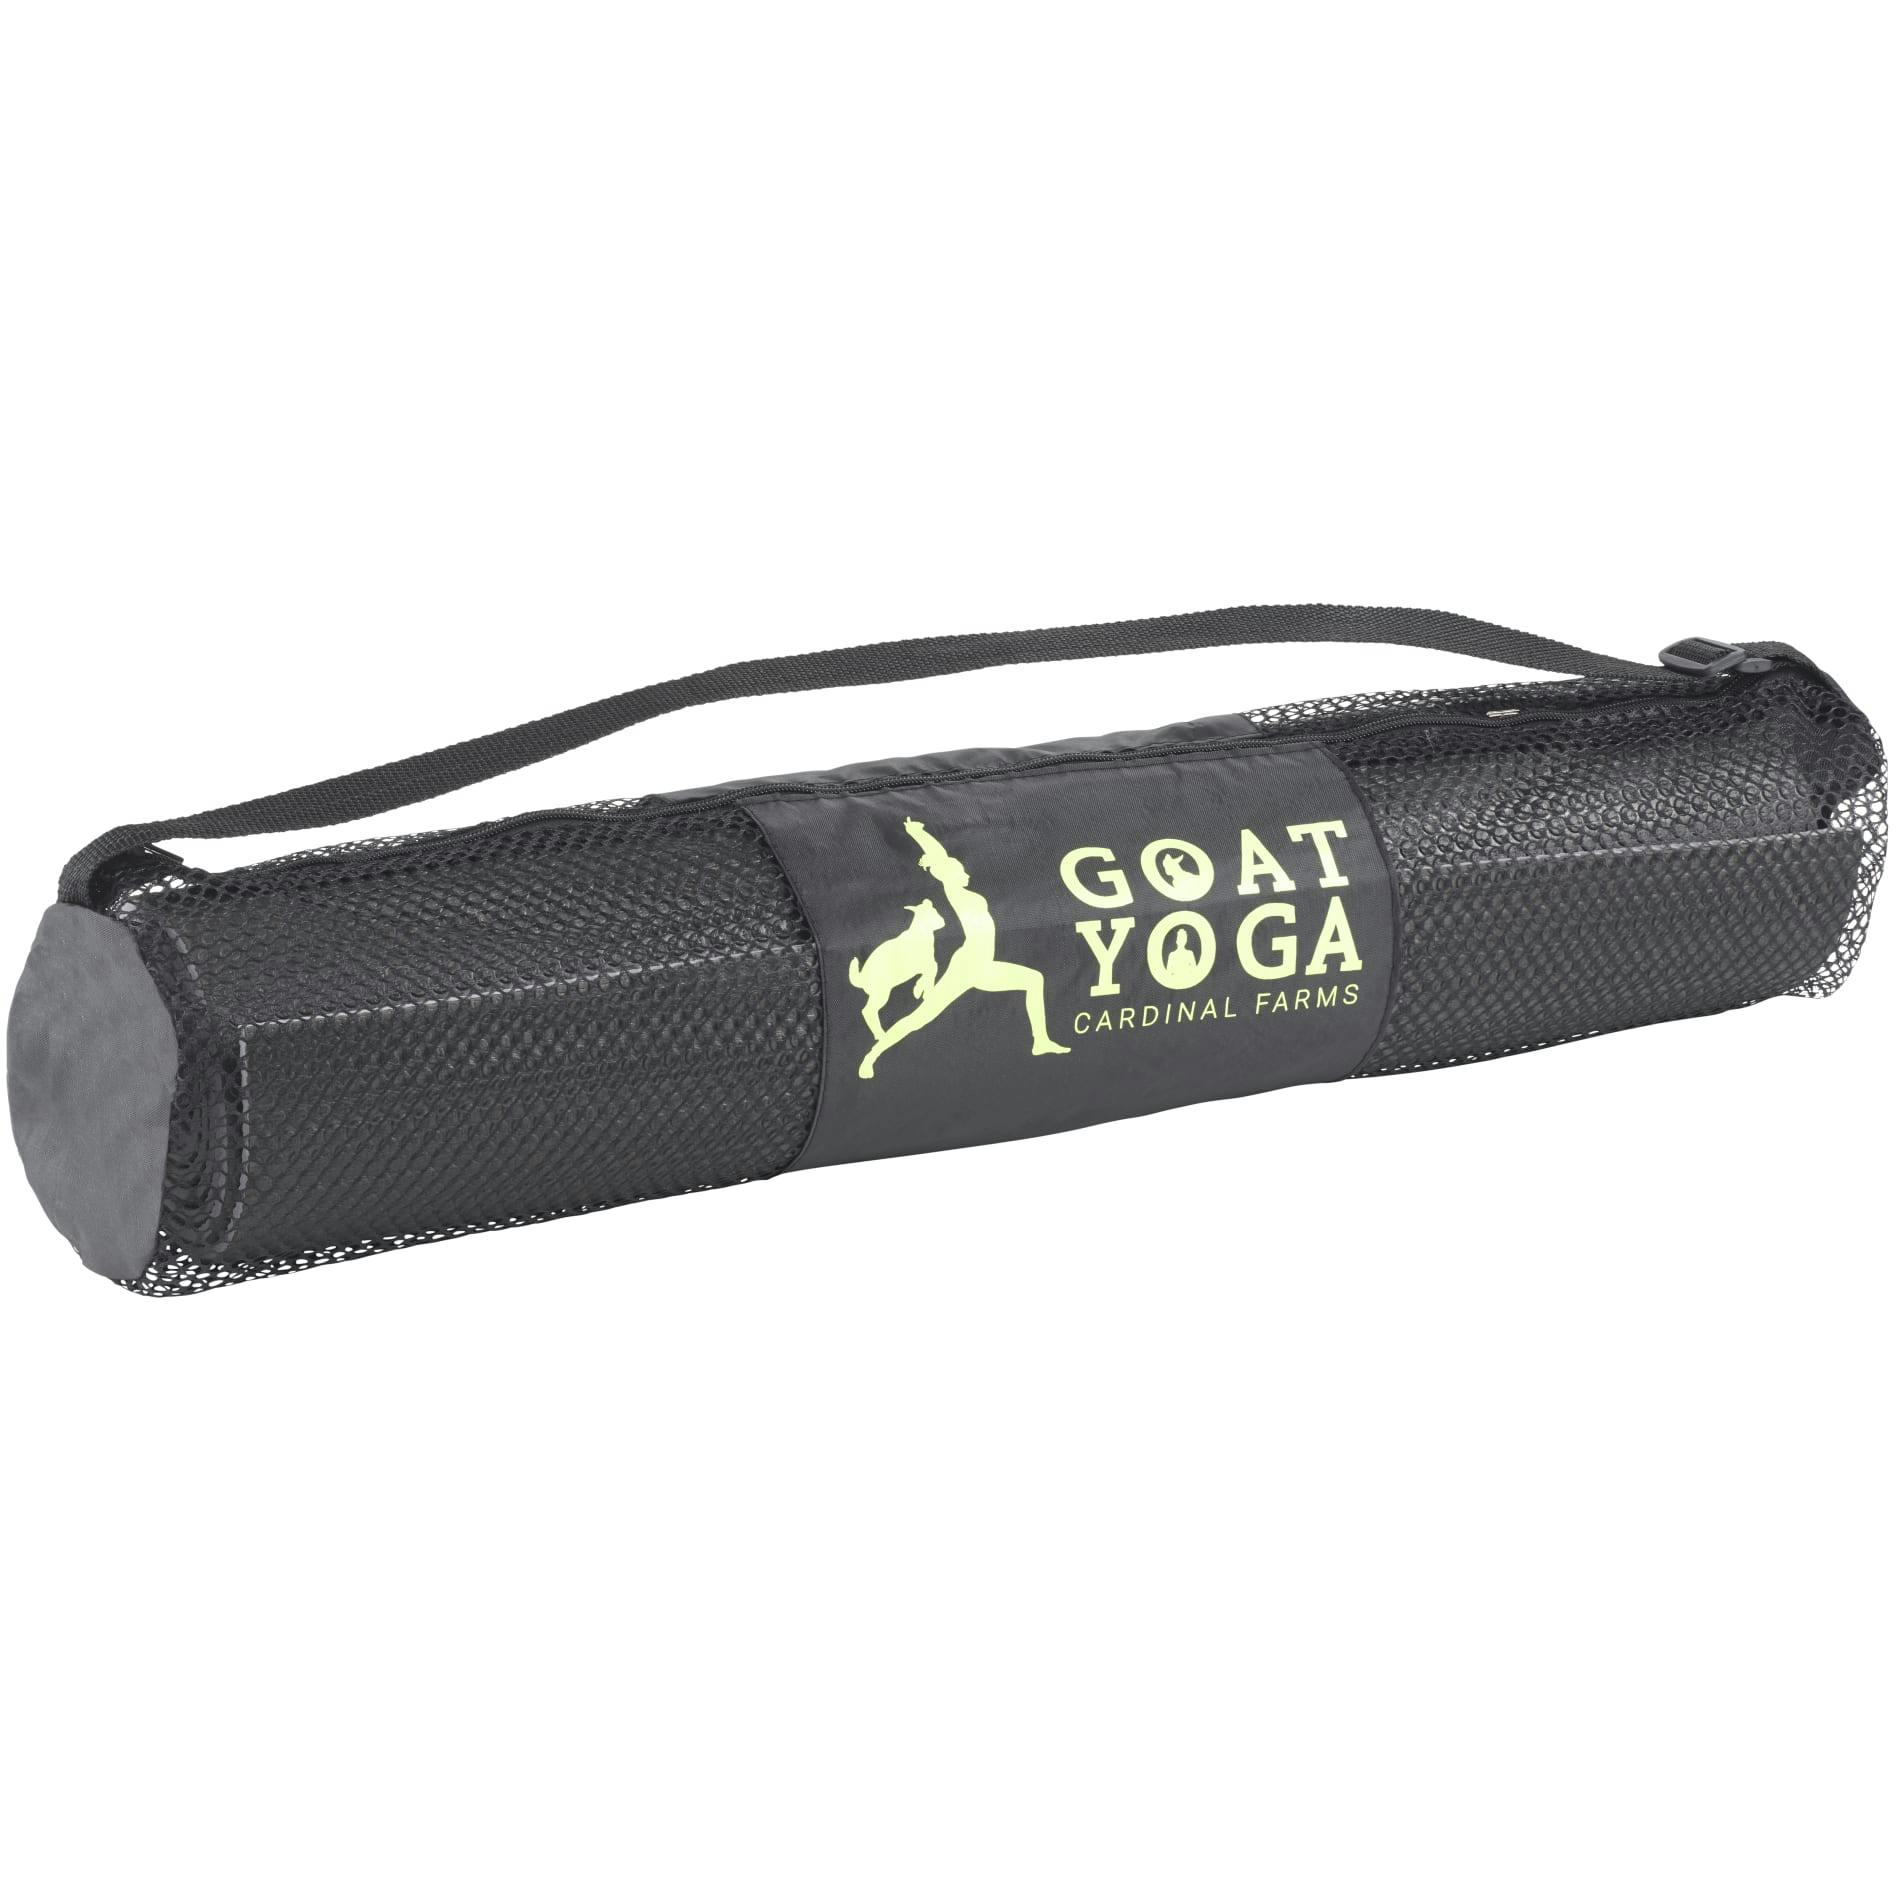 Align Premium (6mm) Yoga Mat - additional Image 2